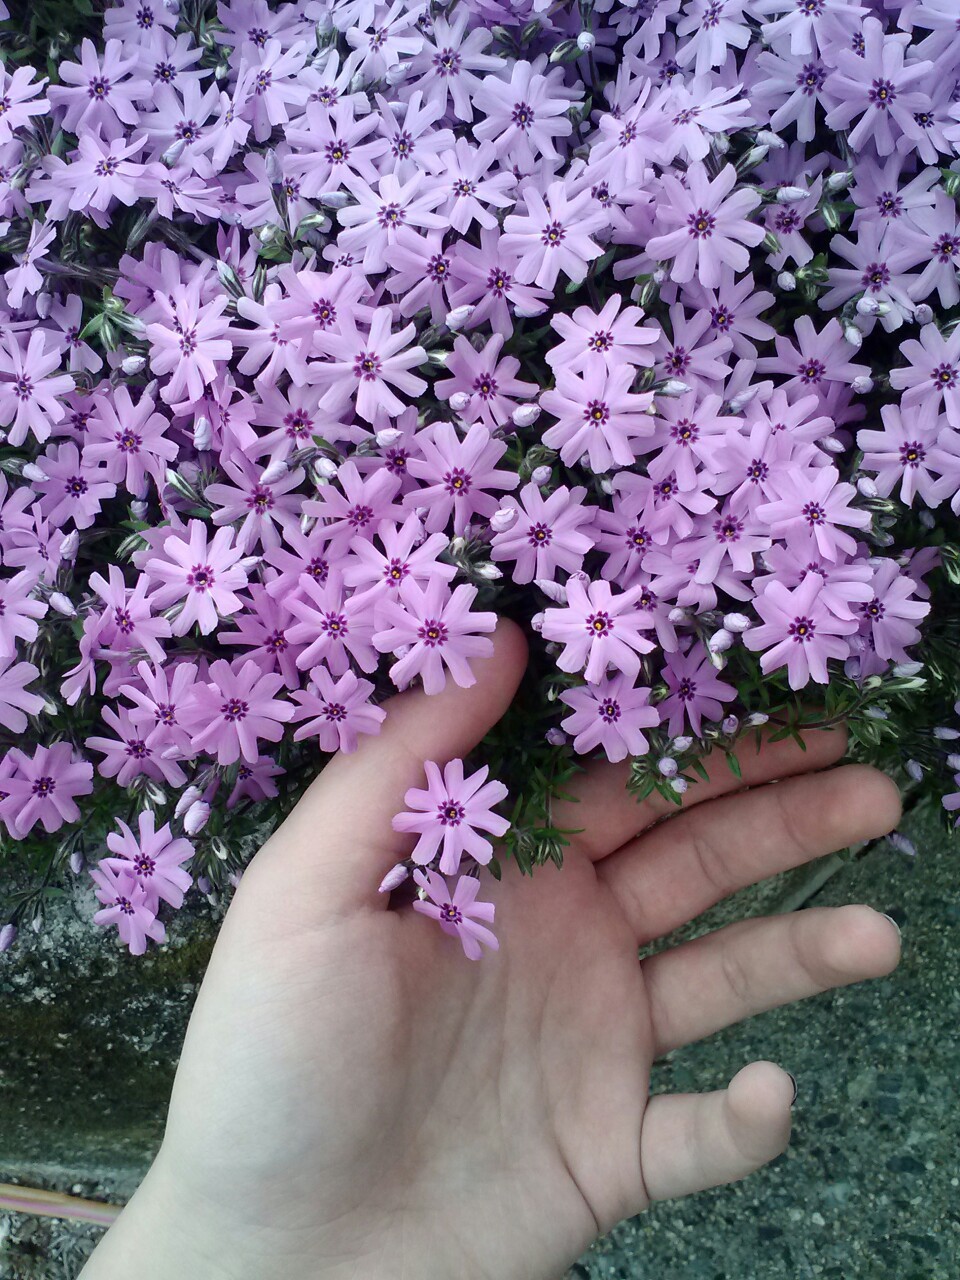 Light Purple Flowers Tumblr